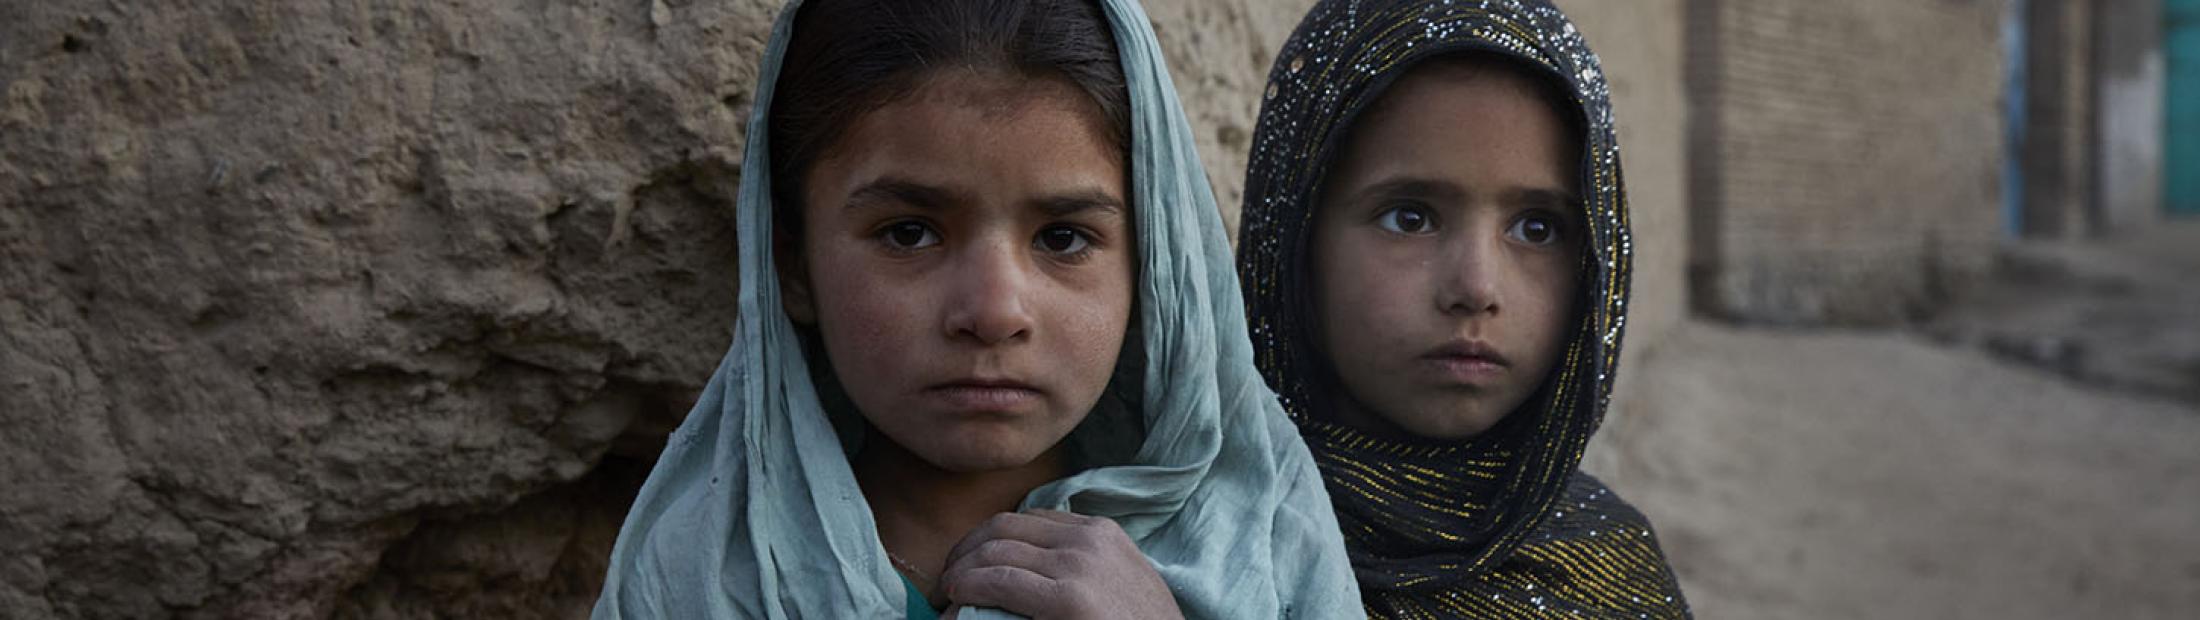 Afganistán: una lucha diaria por sobrevivir